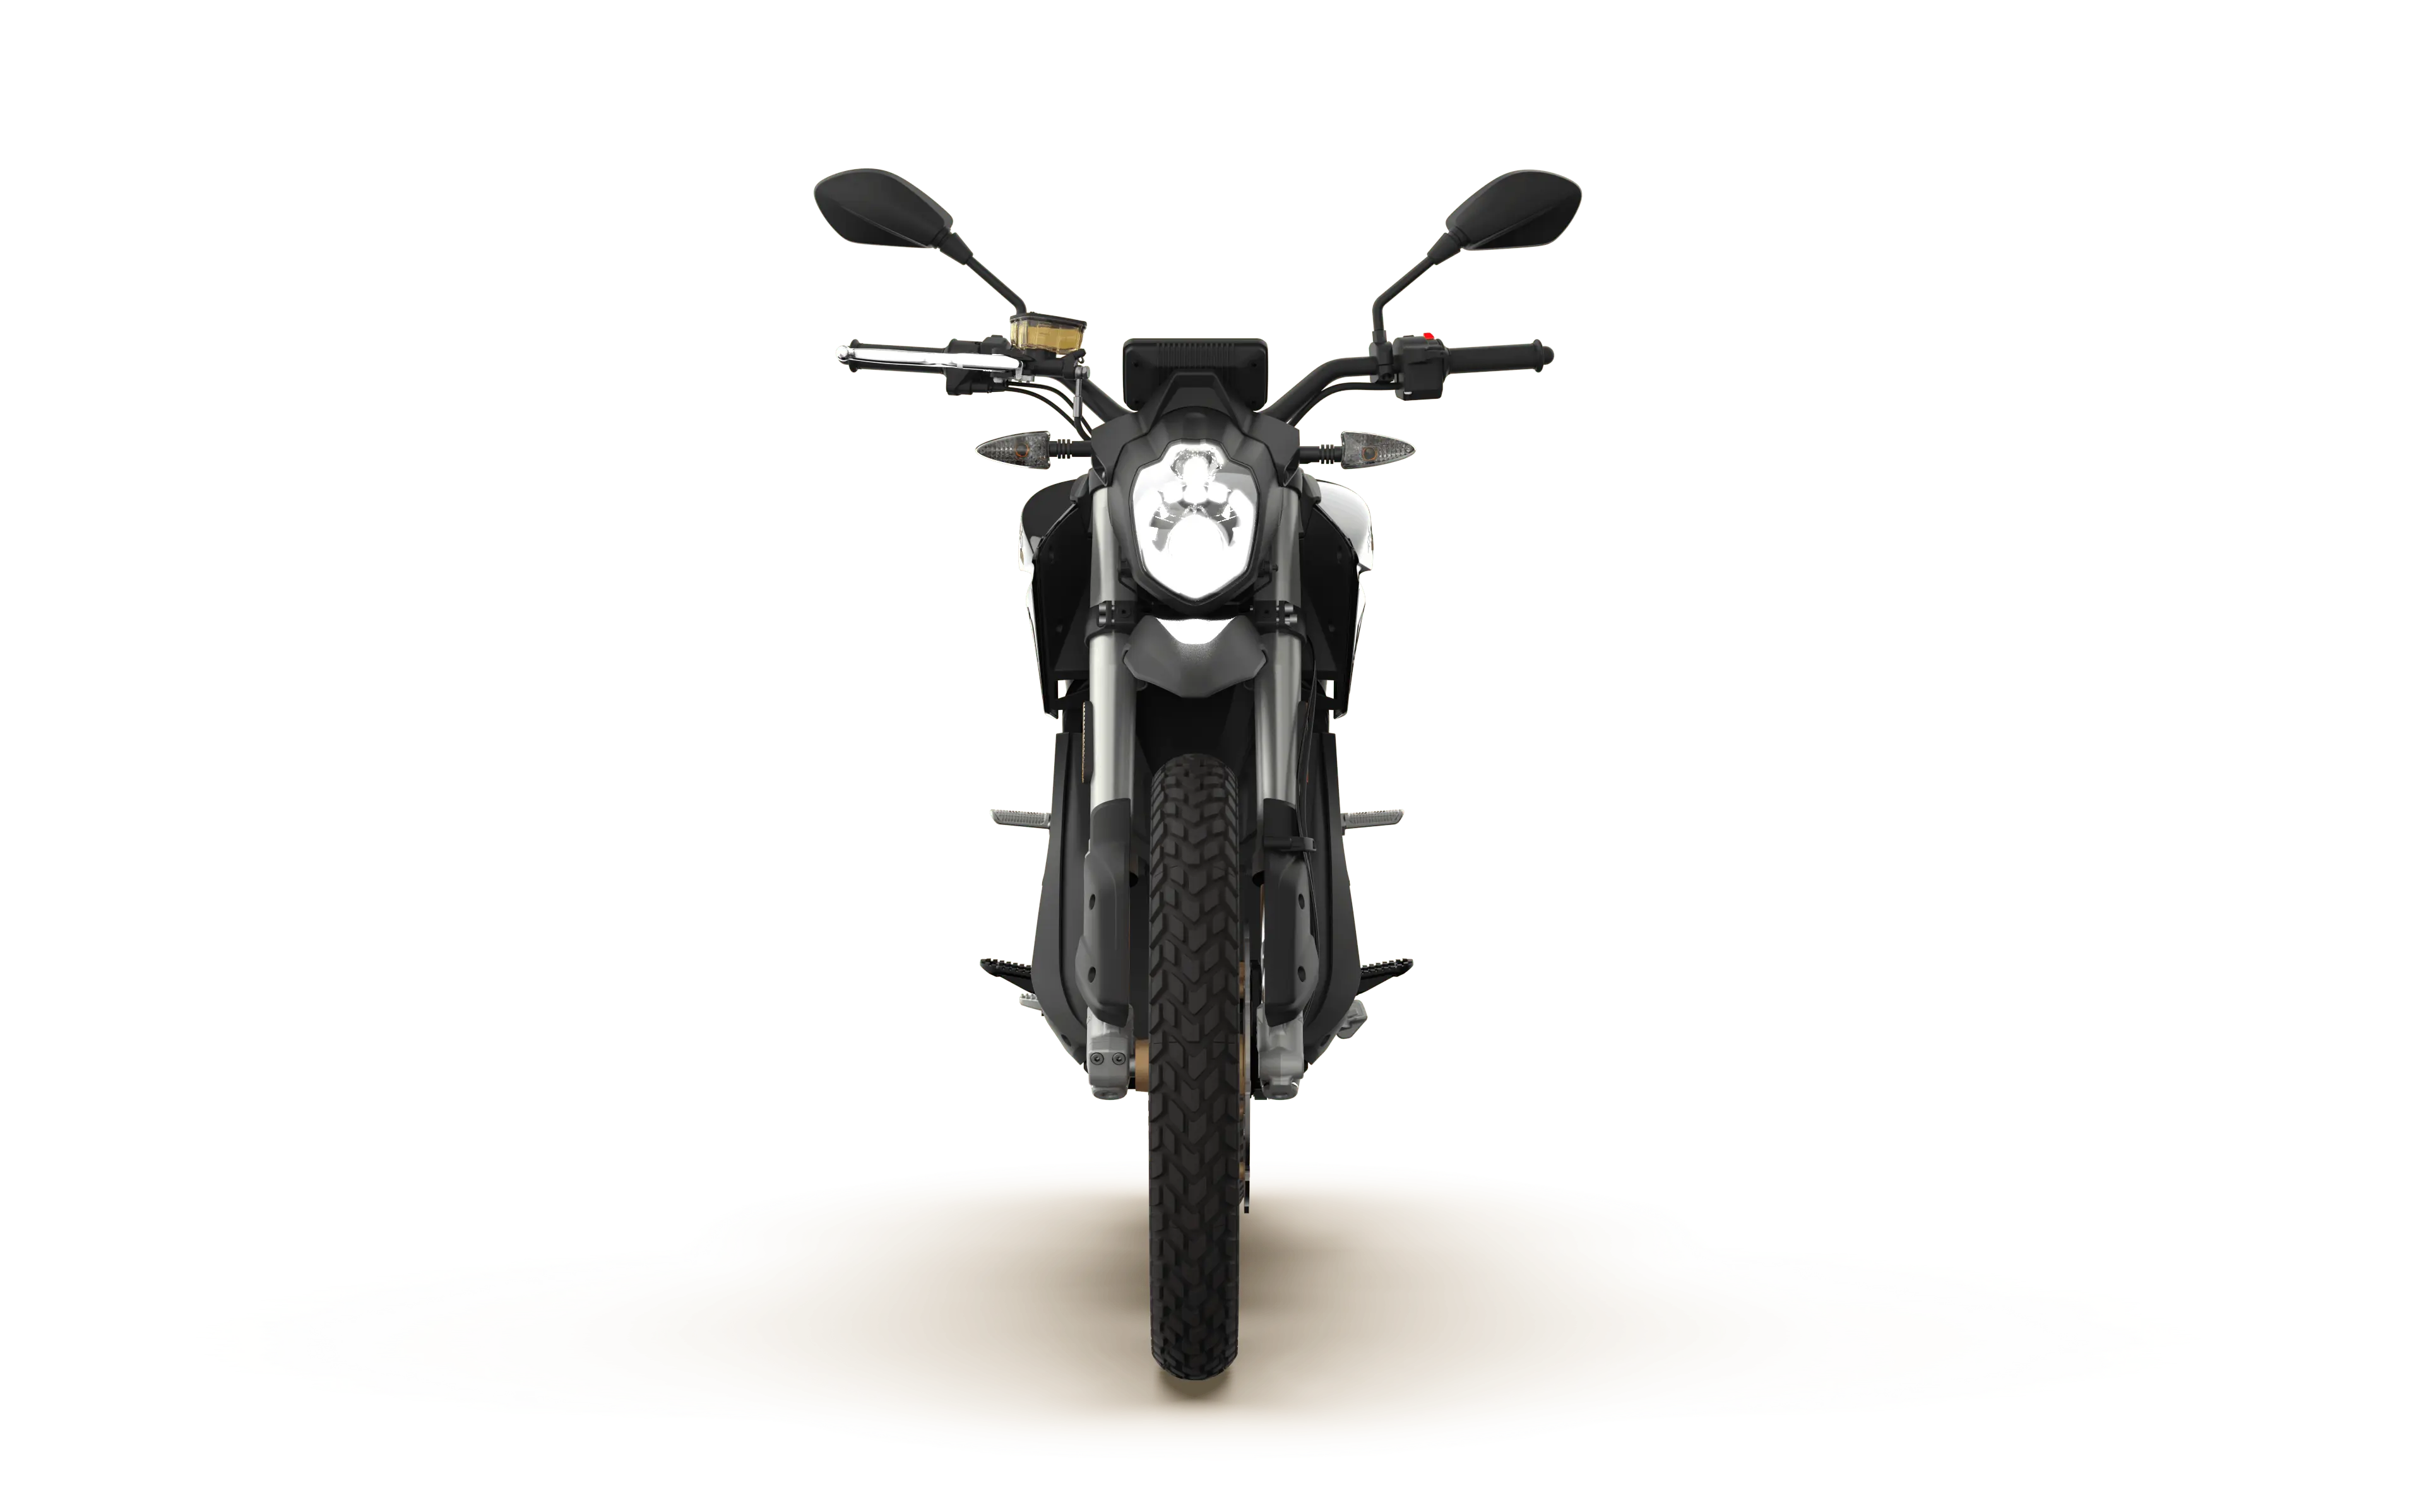 Zero Motorcycles: Khám phá khoảng trống nằm giữa xe đạp và xe máy với mẫu xe motor không chạy bằng xăng, Zero Motorcycles. Với khả năng chạy ổn định, tốc độ và tính bền bỉ, bạn sẽ không còn cảm thấy lo lắng về các vấn đề môi trường khi đi xe.